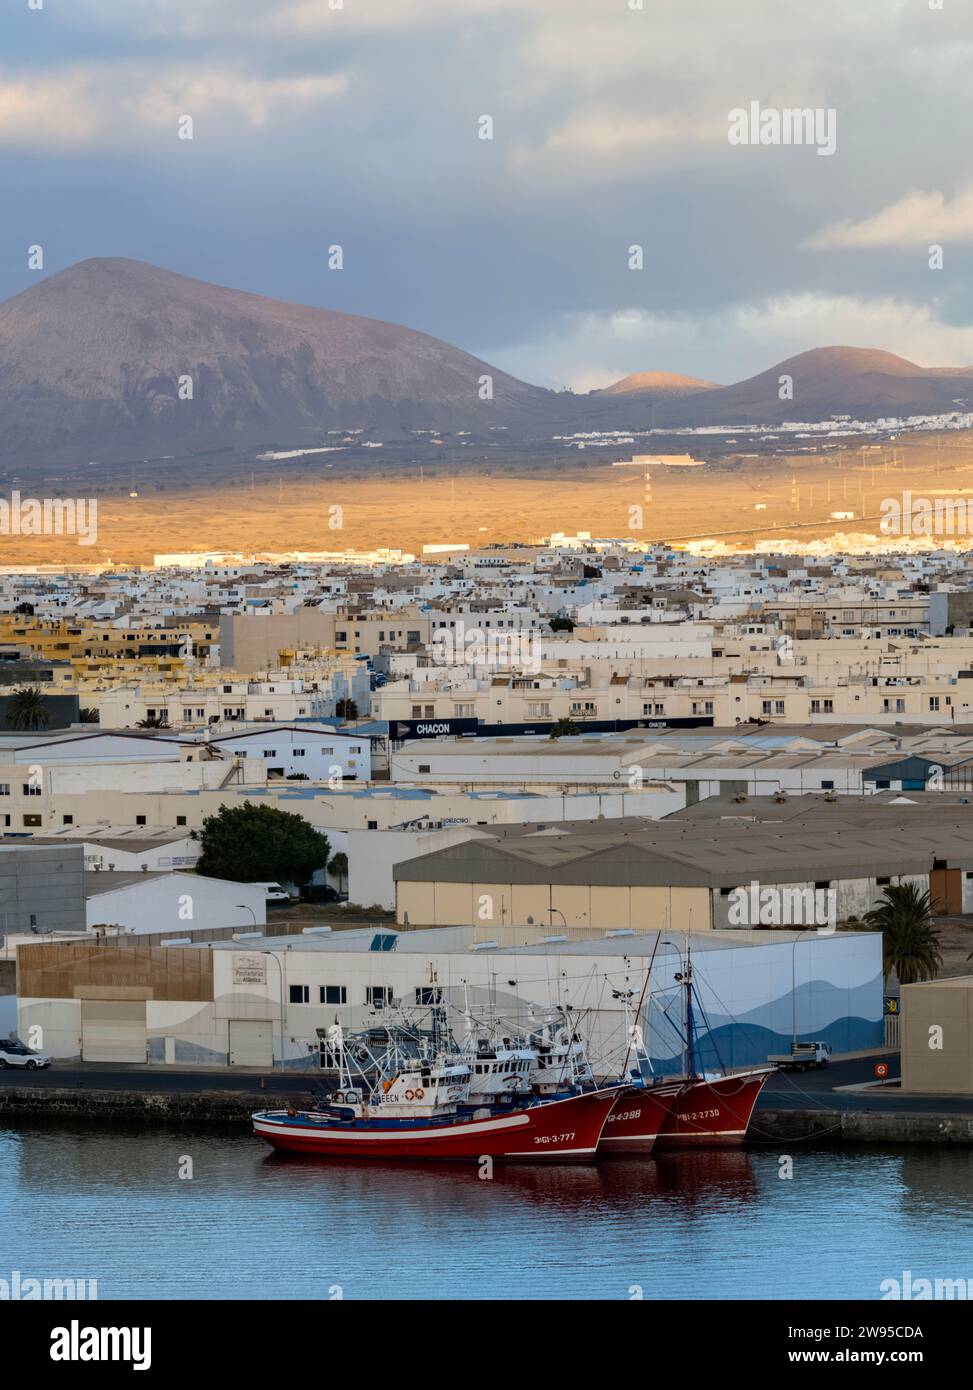 Vue sur le port de croisière et le port de Muelle de Cruseros, Arrecife, Lanzarote, îles Canaries, Espagne Banque D'Images